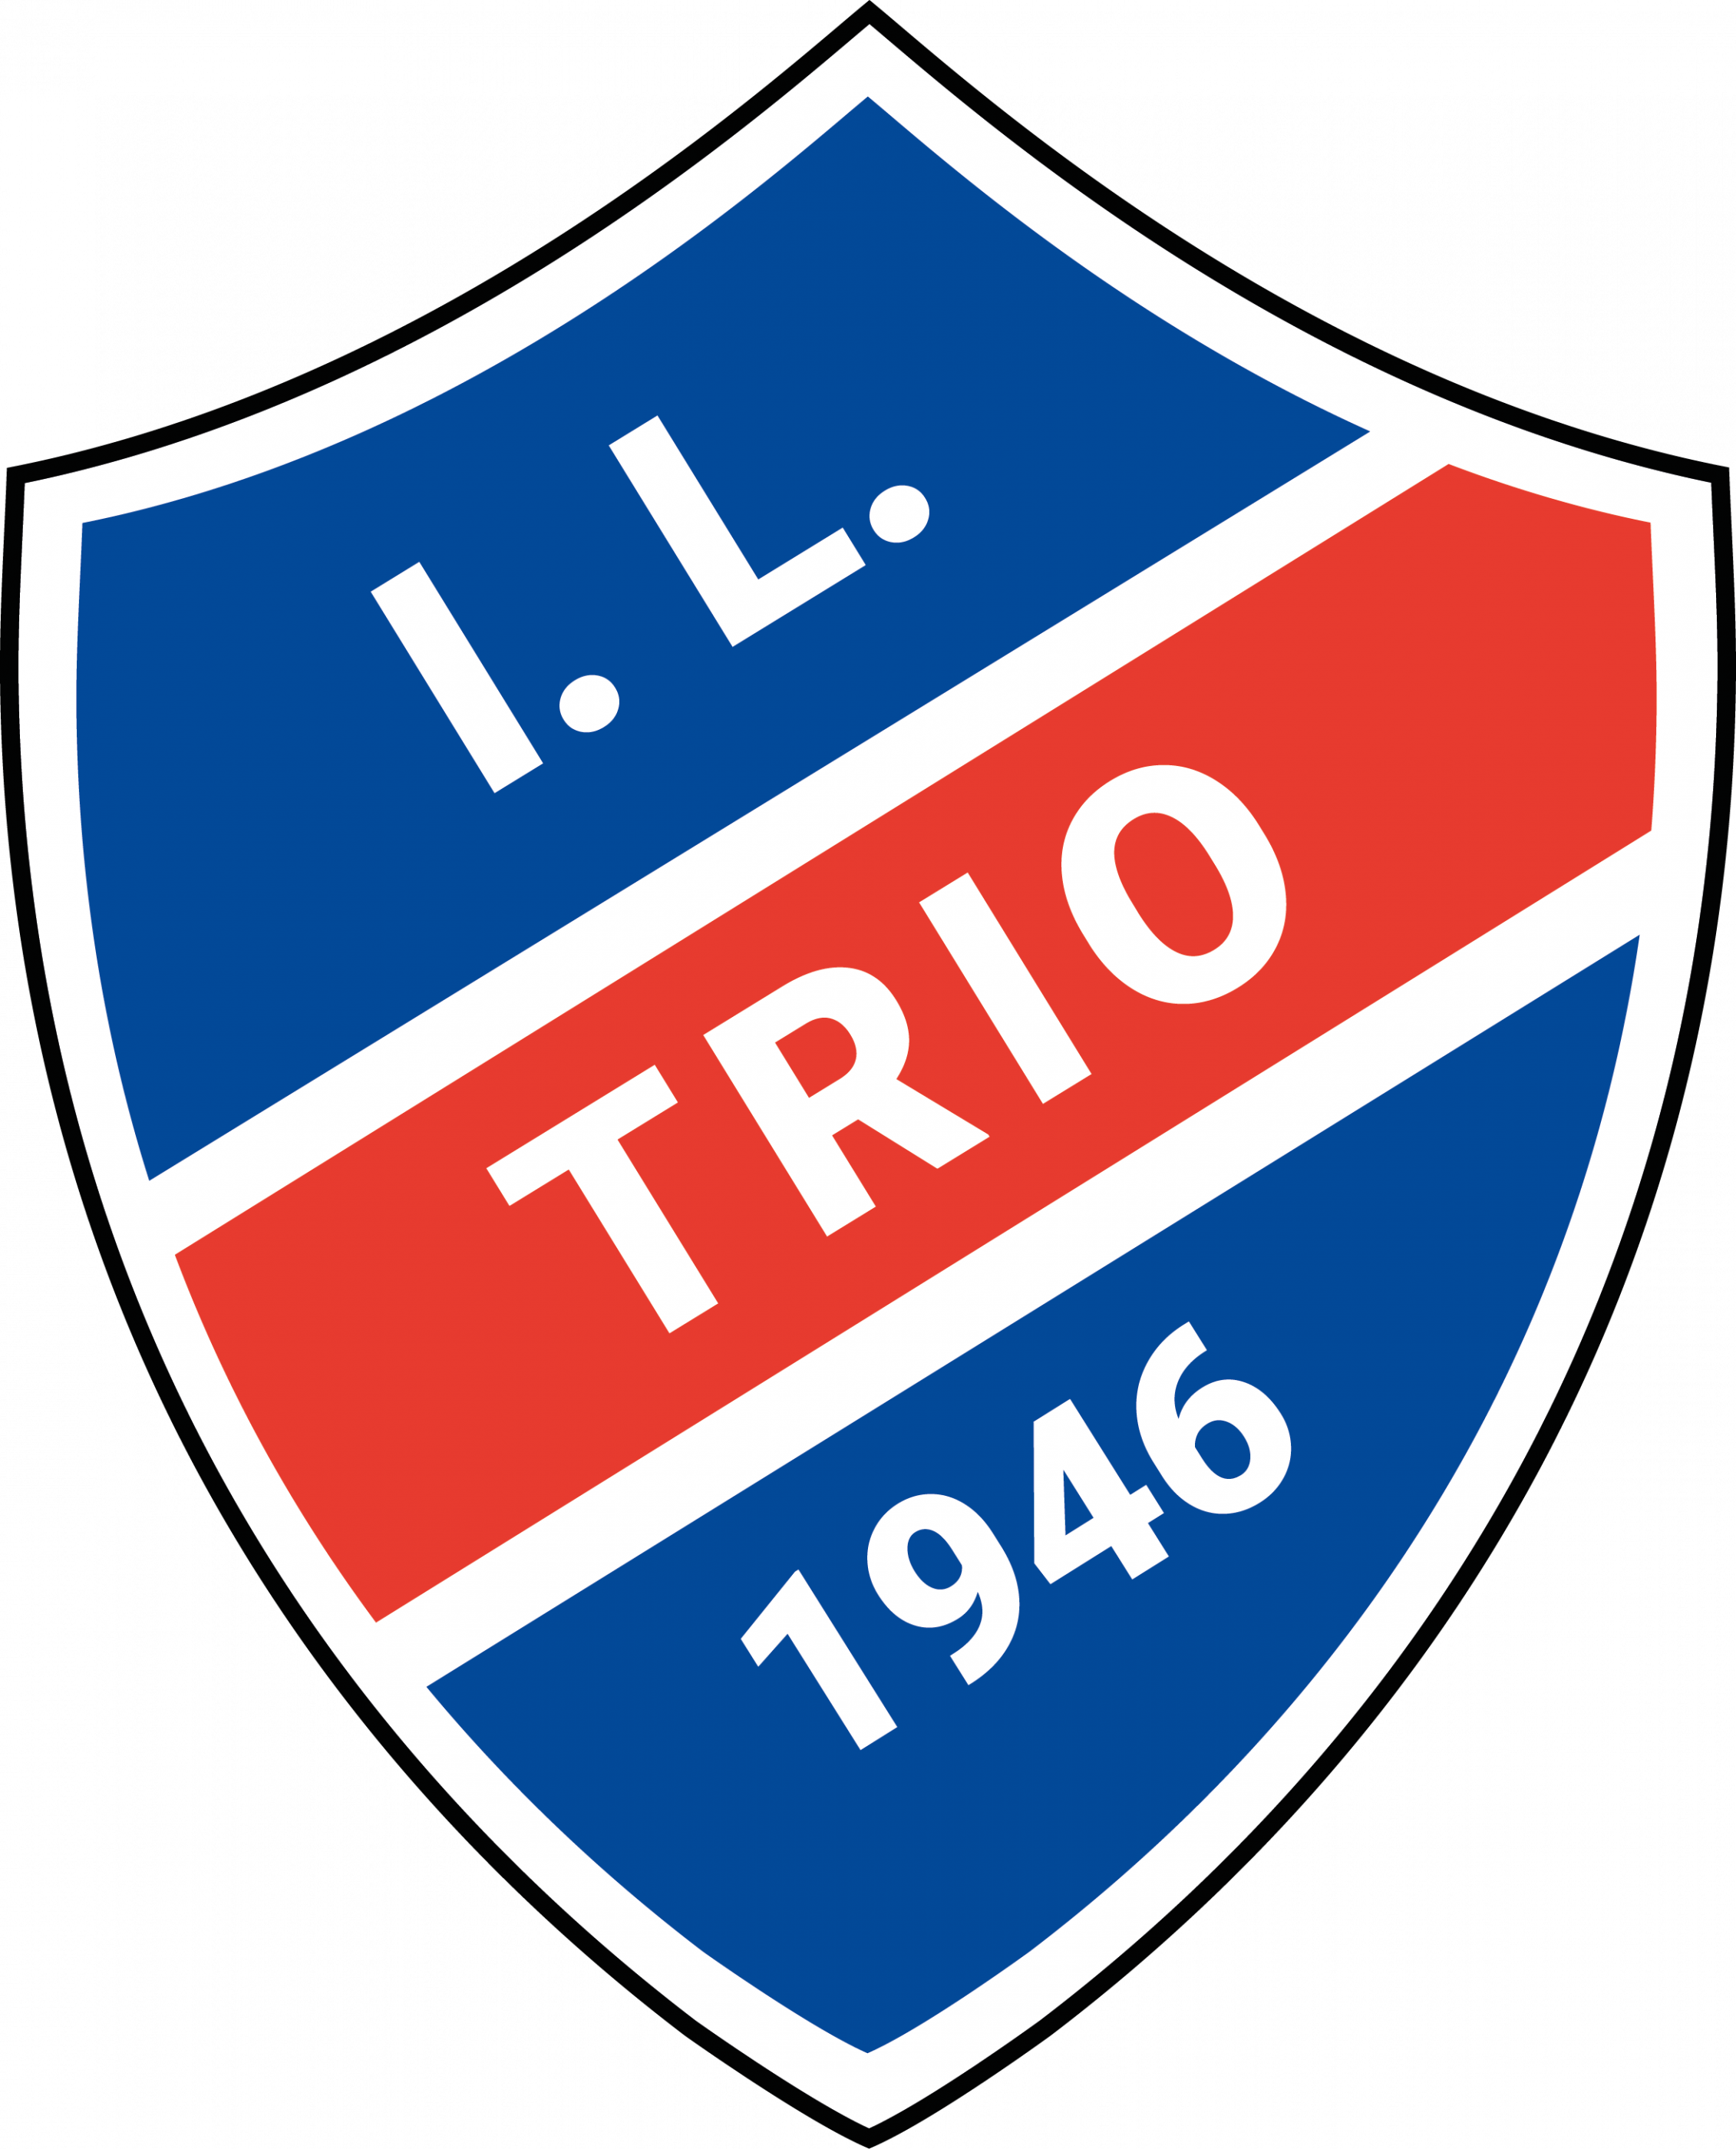 I.L. Trio